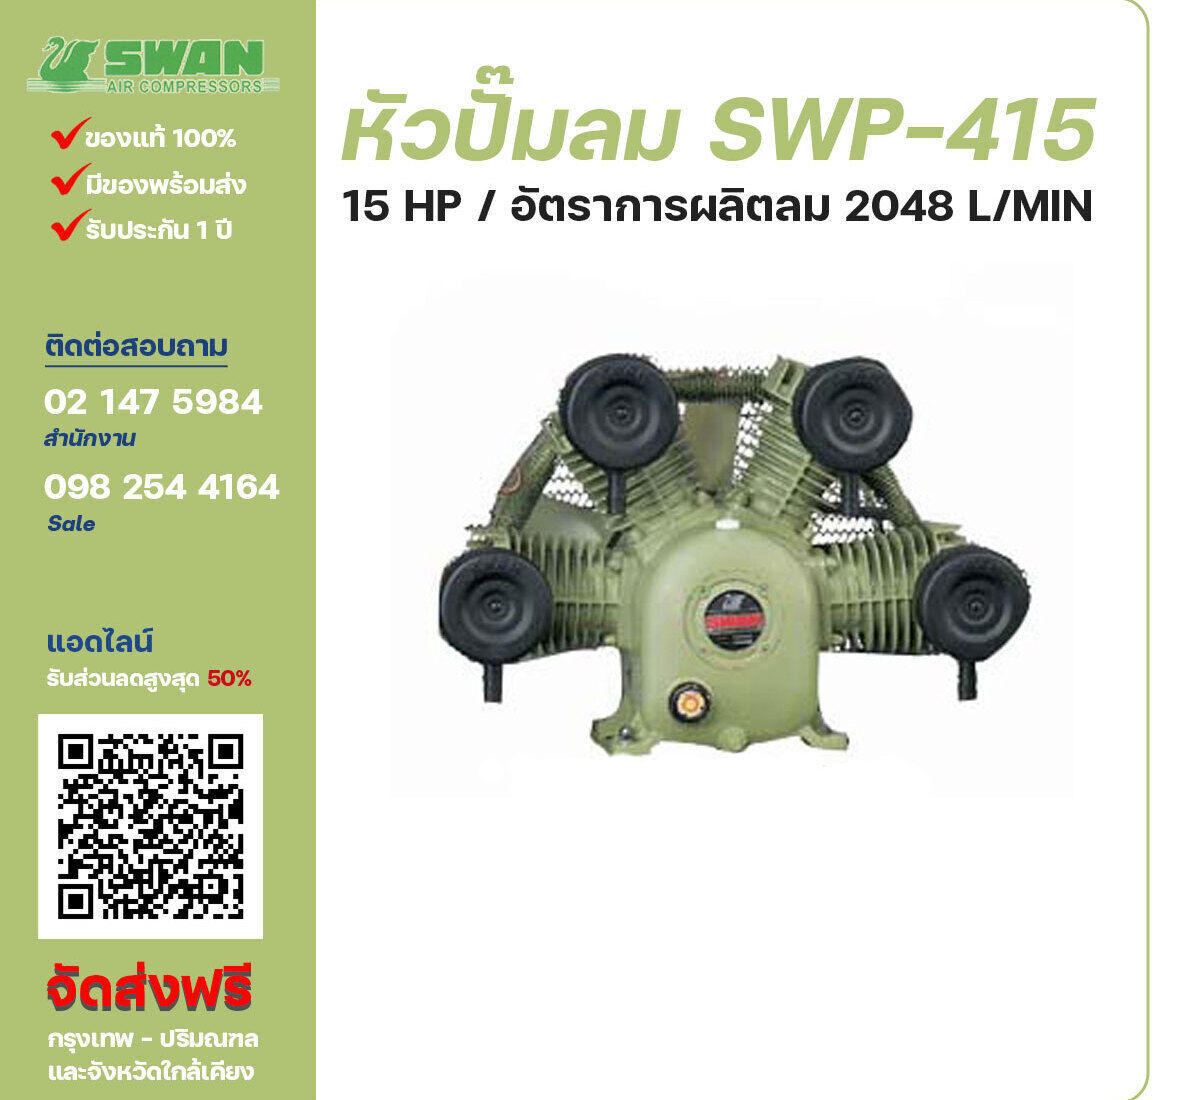 จำหน่ายหัวปั๊มลมสวอน ของแท้ 100% SWAN Bare Compressor รุ่น SWP-415 ขนาด 15 แรงม้า อัตราการผลิตลม 1,480 ลิตร / นาที รับประกัน 3 เดือน ตามเงื่อนไขของบริษัทฯ จัดส่งฟรี กรุงเทพ-ปริมณฑล